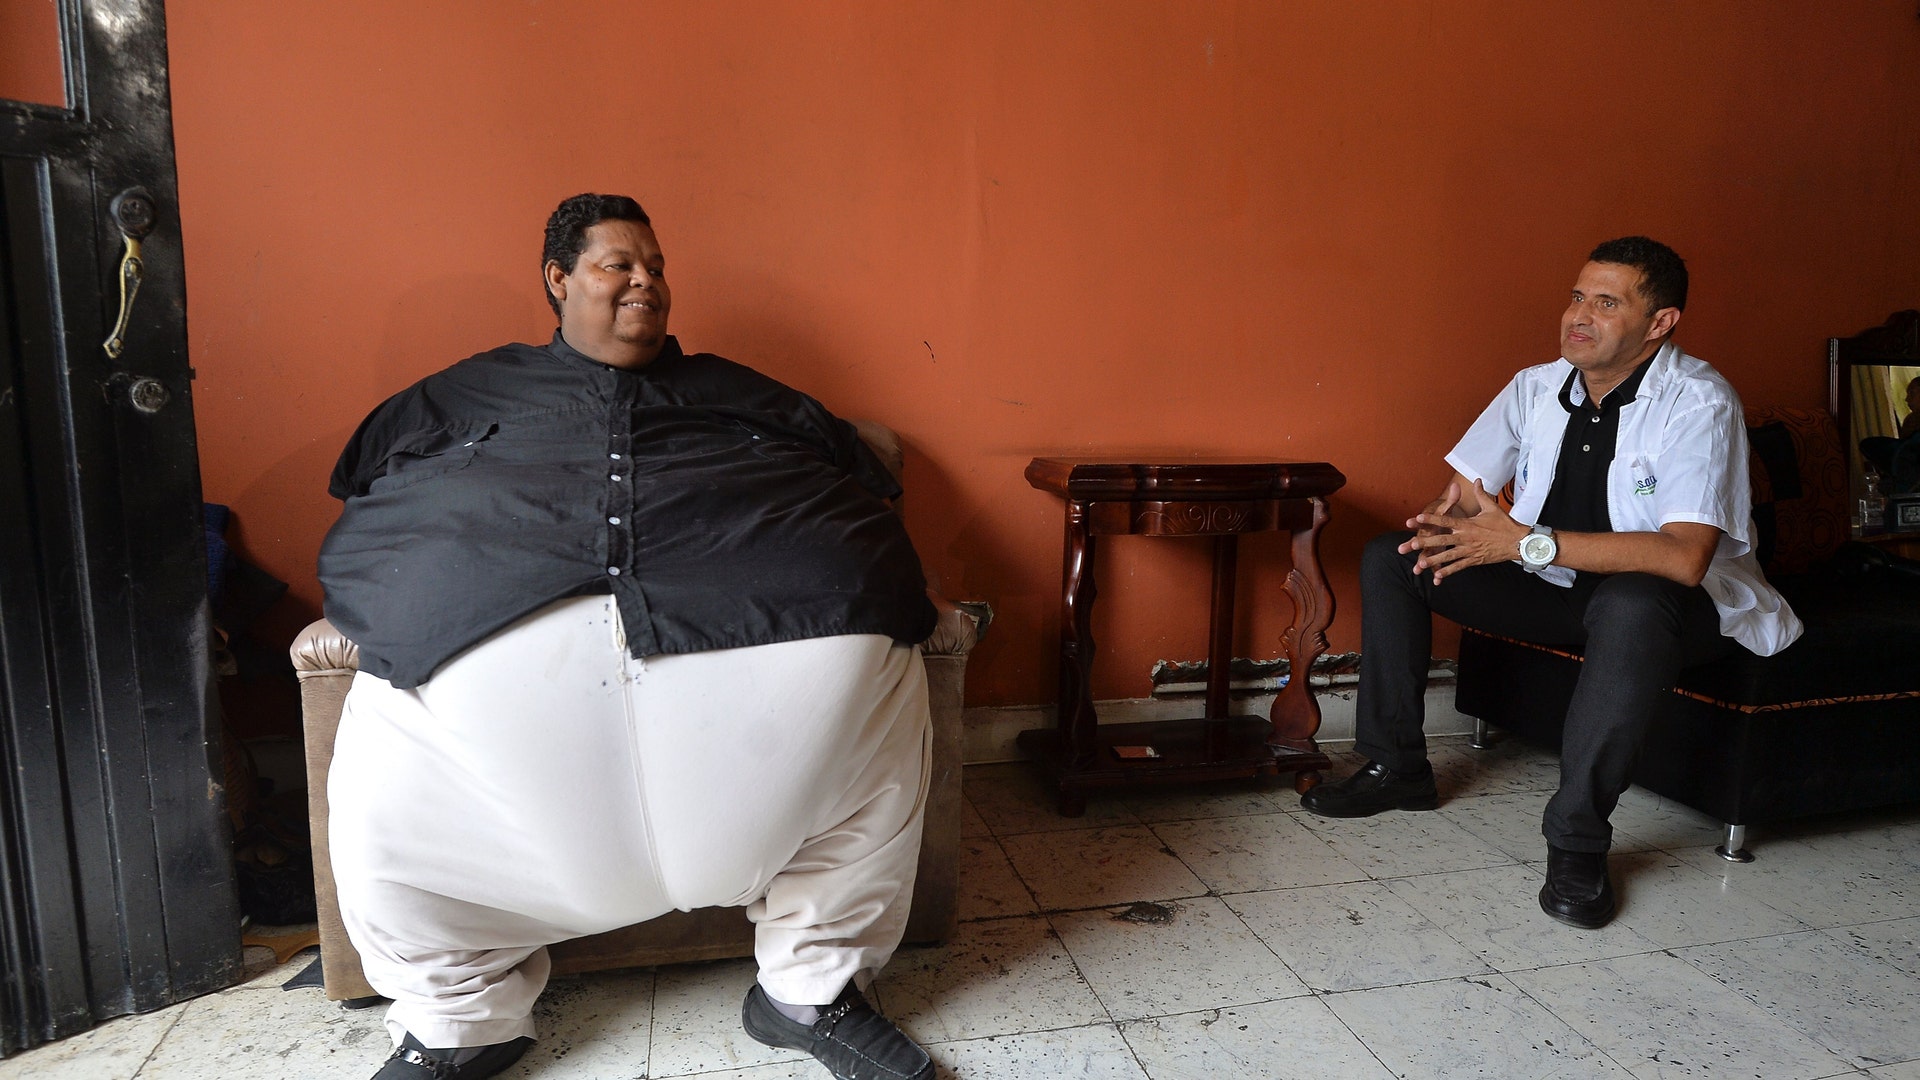 Громадный и толстый. Хуан Педро Франко 600 кг.